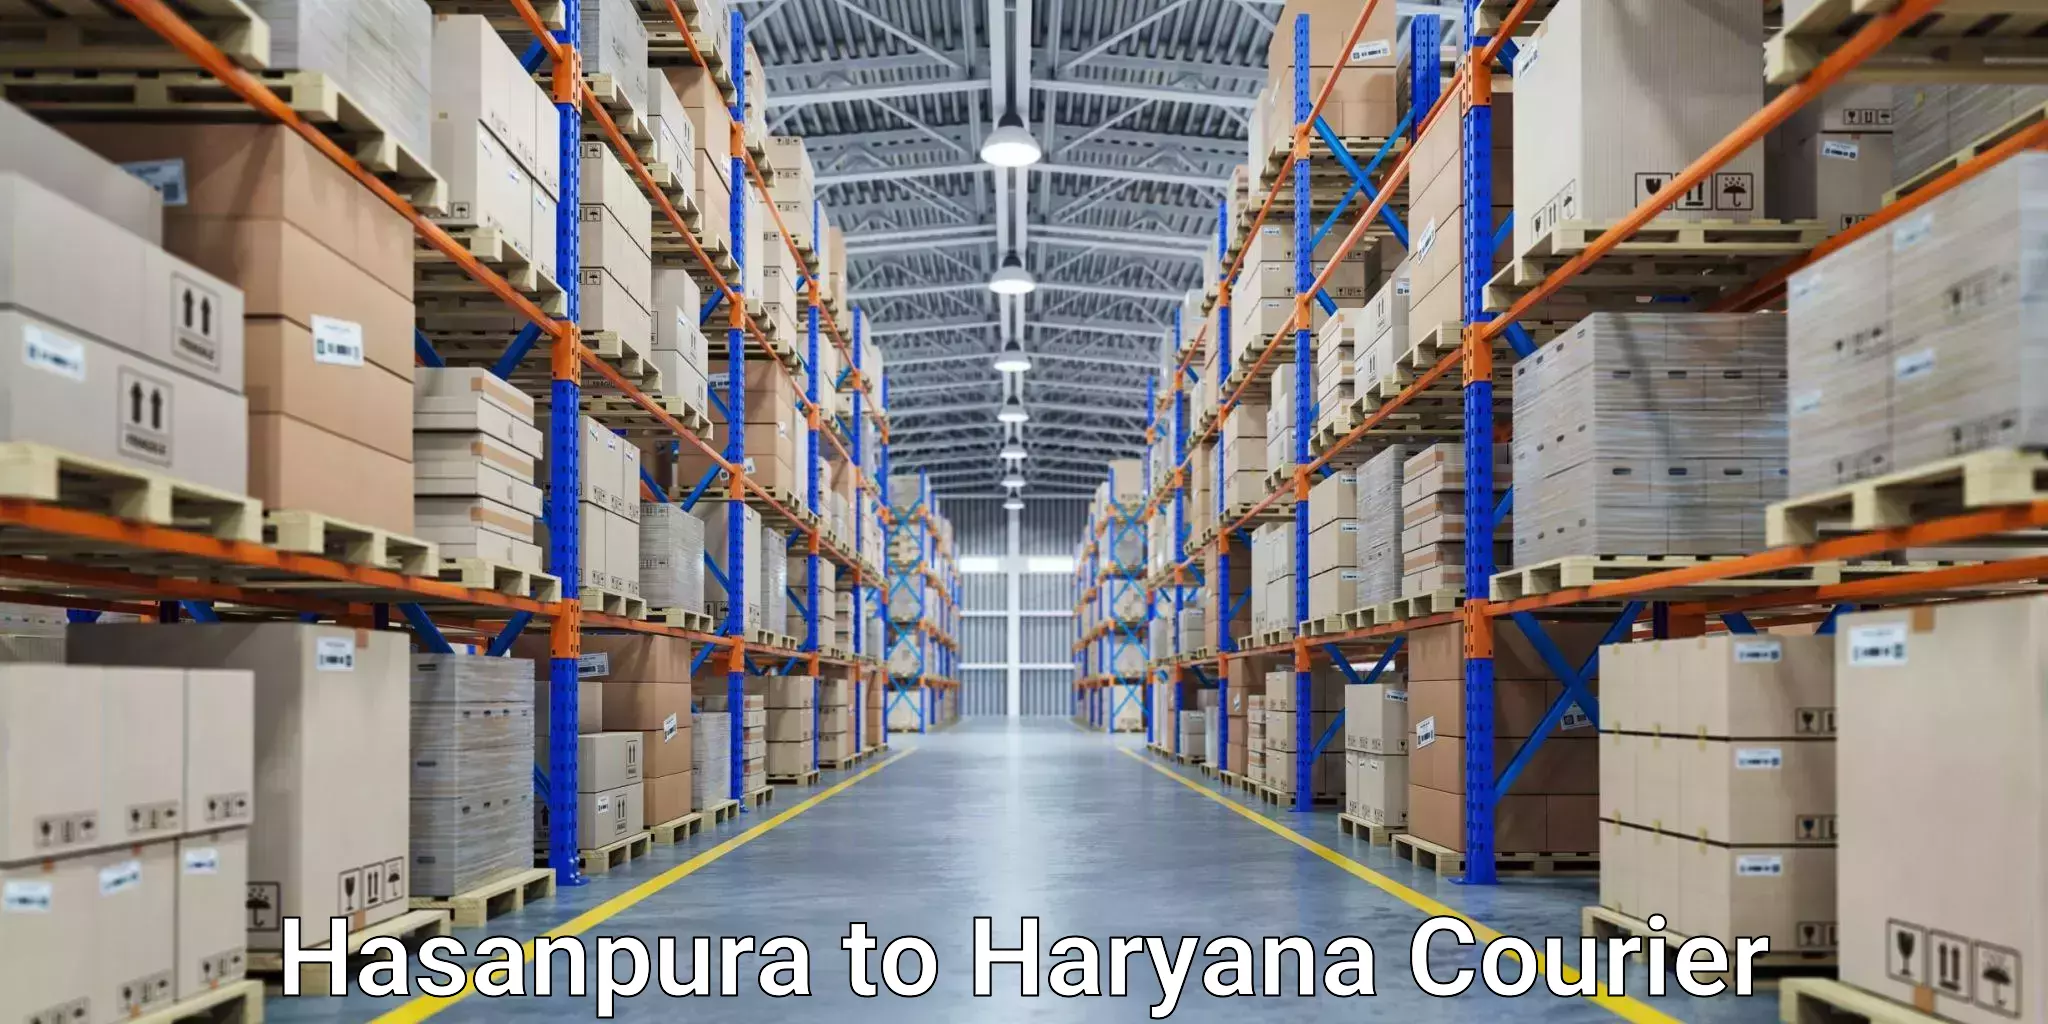 Courier service comparison Hasanpura to Charkhi Dadri